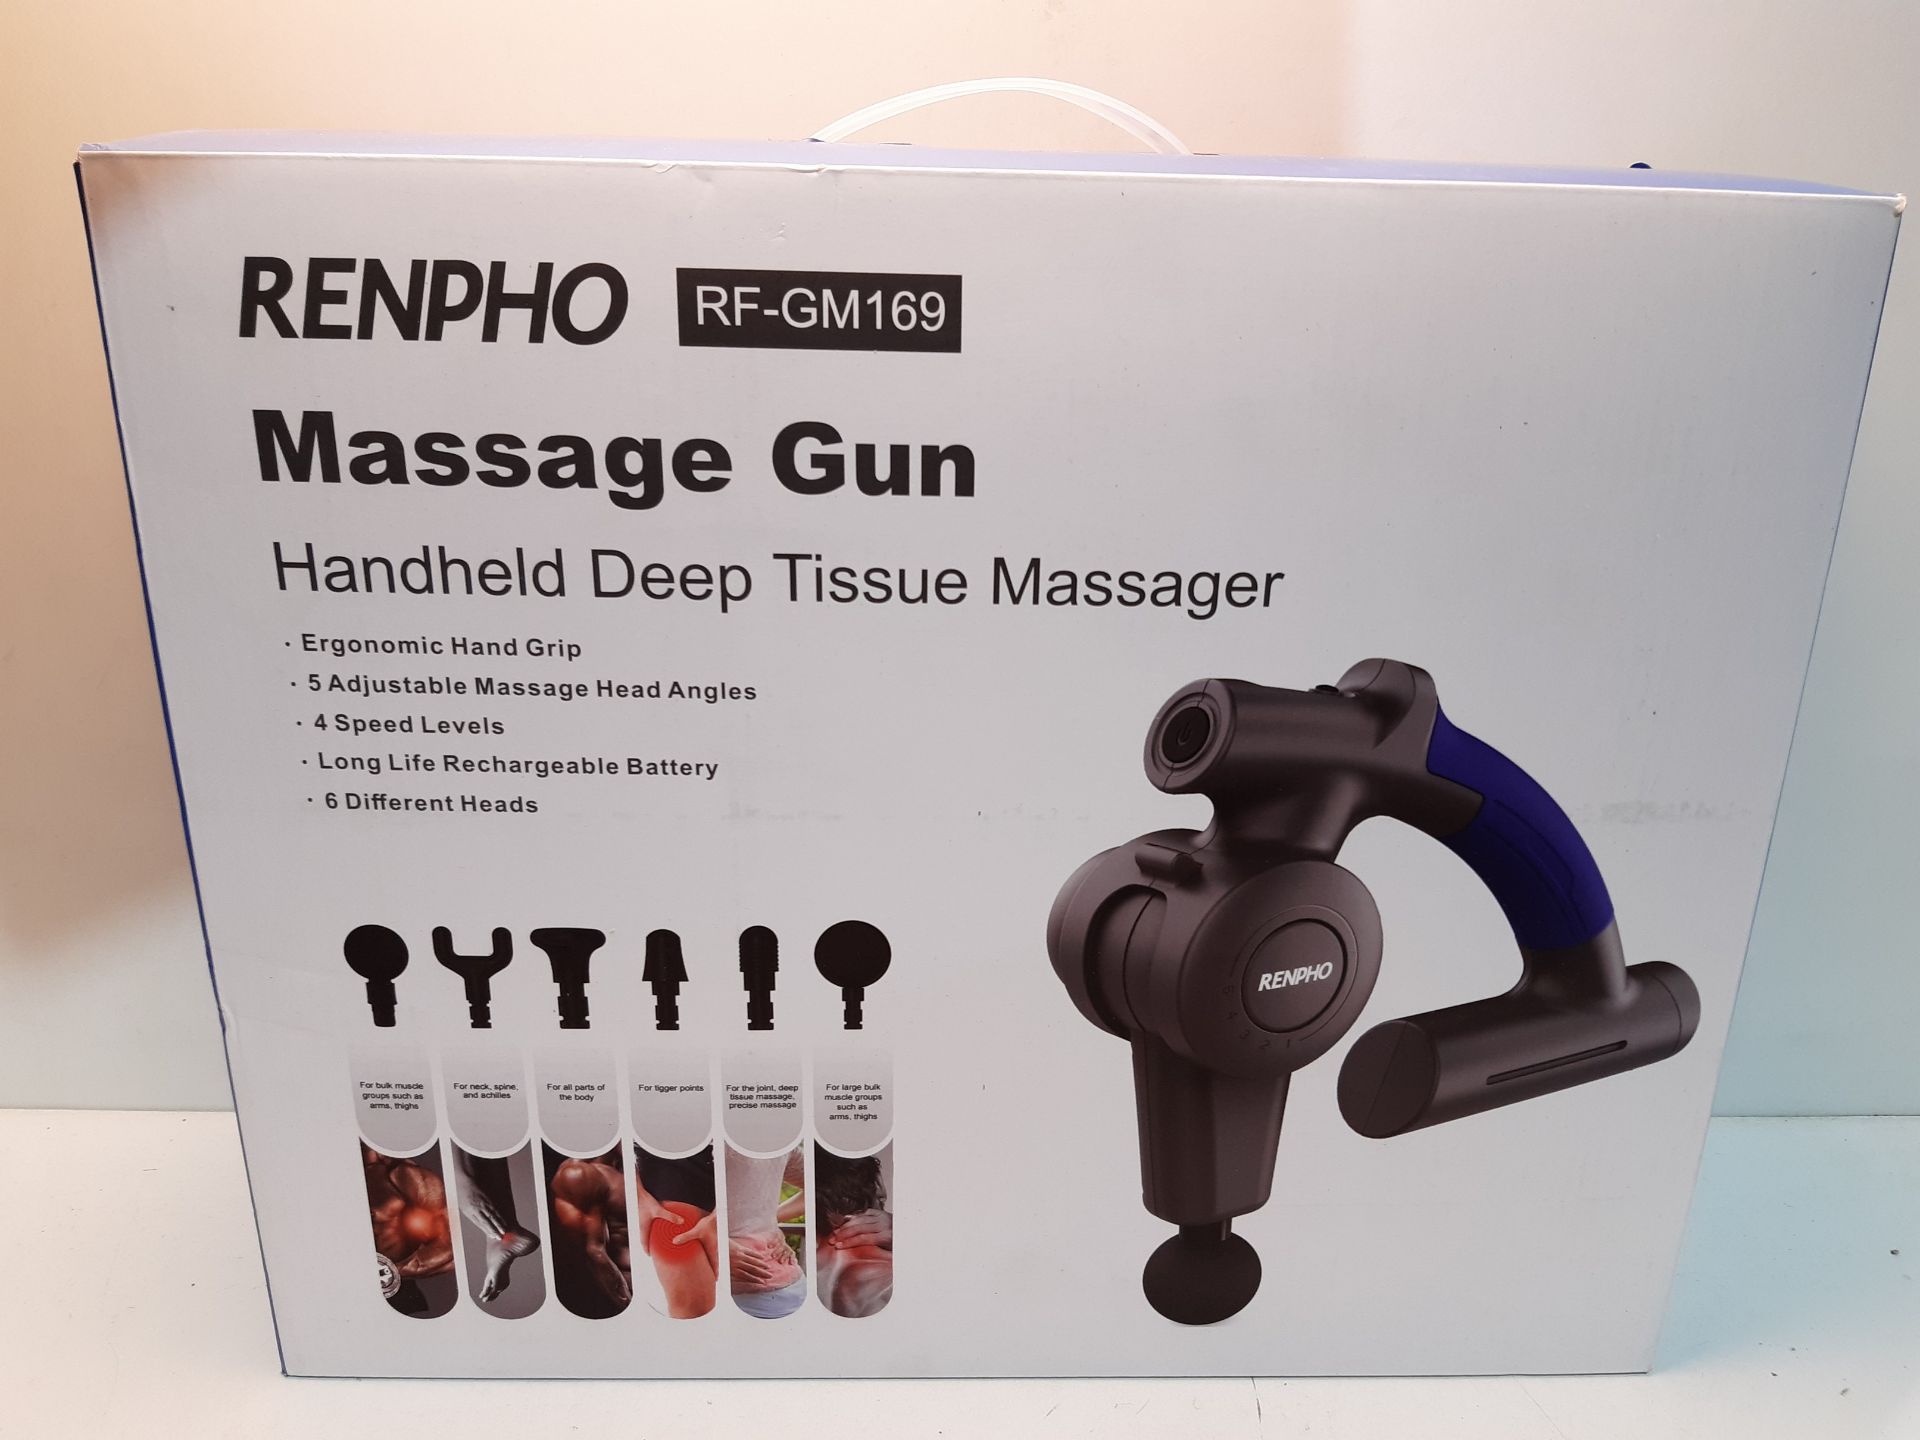 RRP £72.86 Massage Gun - Image 2 of 2